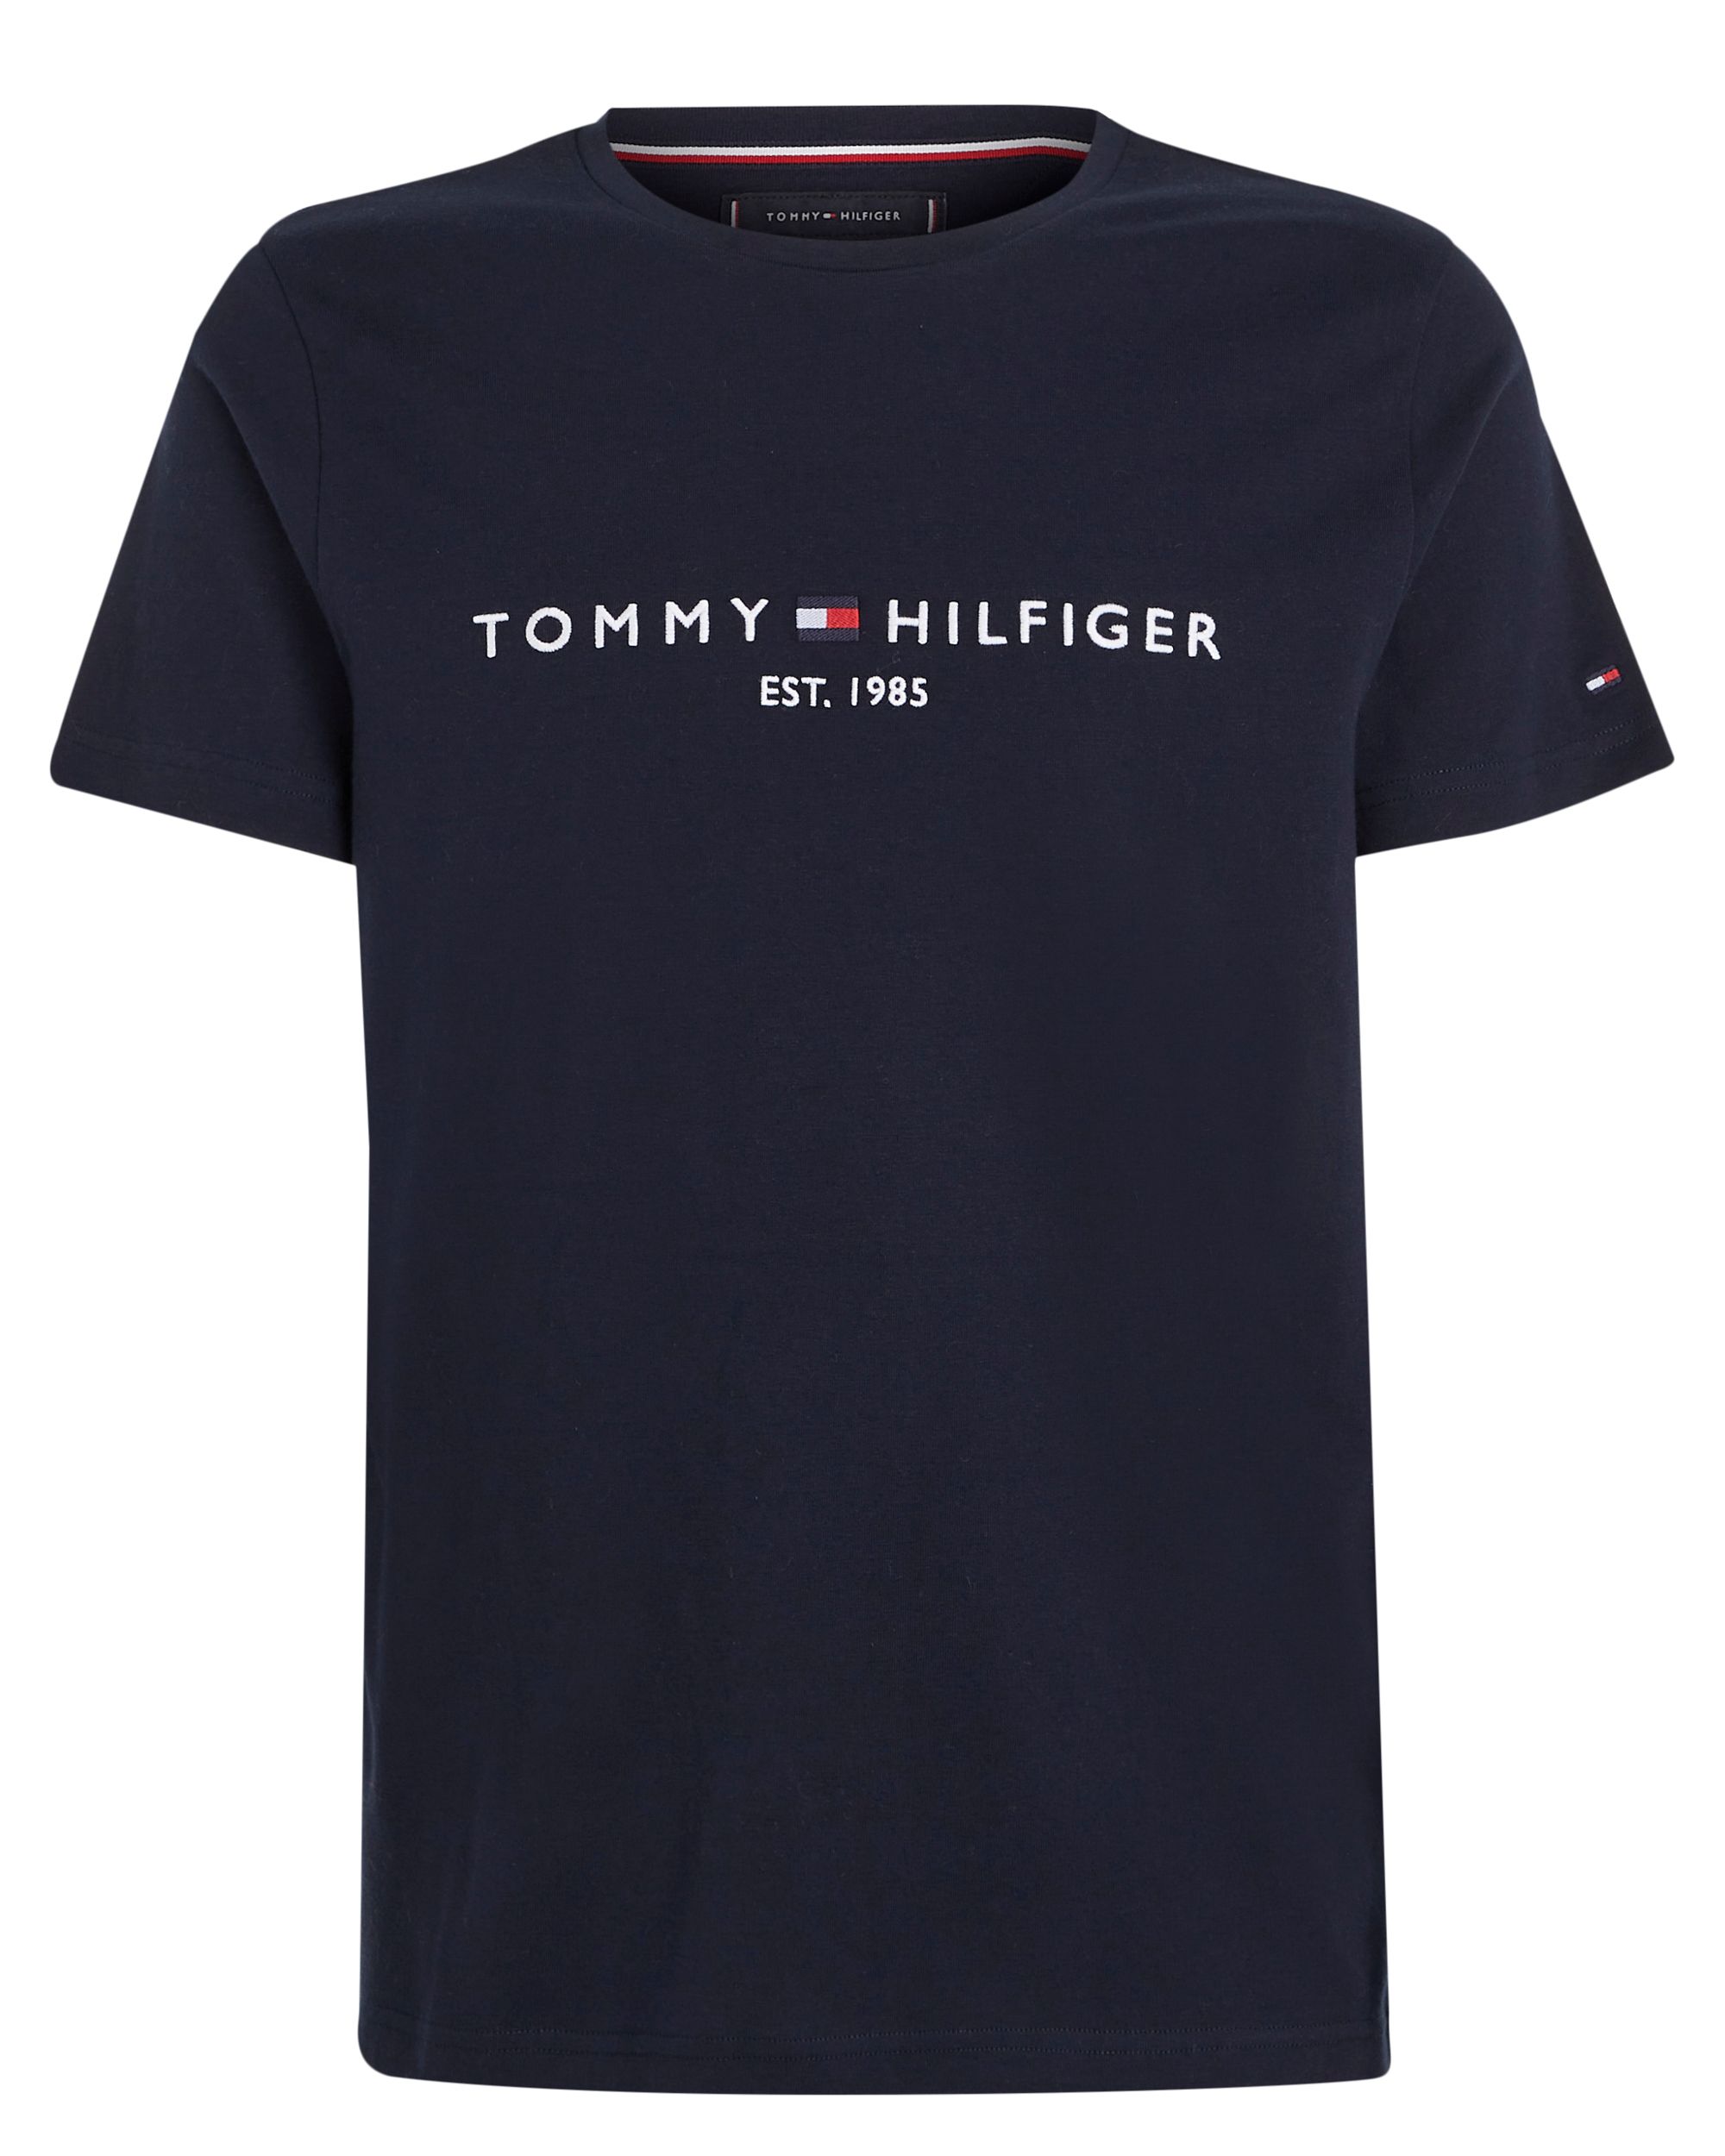 Tommy Hilfiger Menswear T-shirt KM Donker blauw 086989-001-L